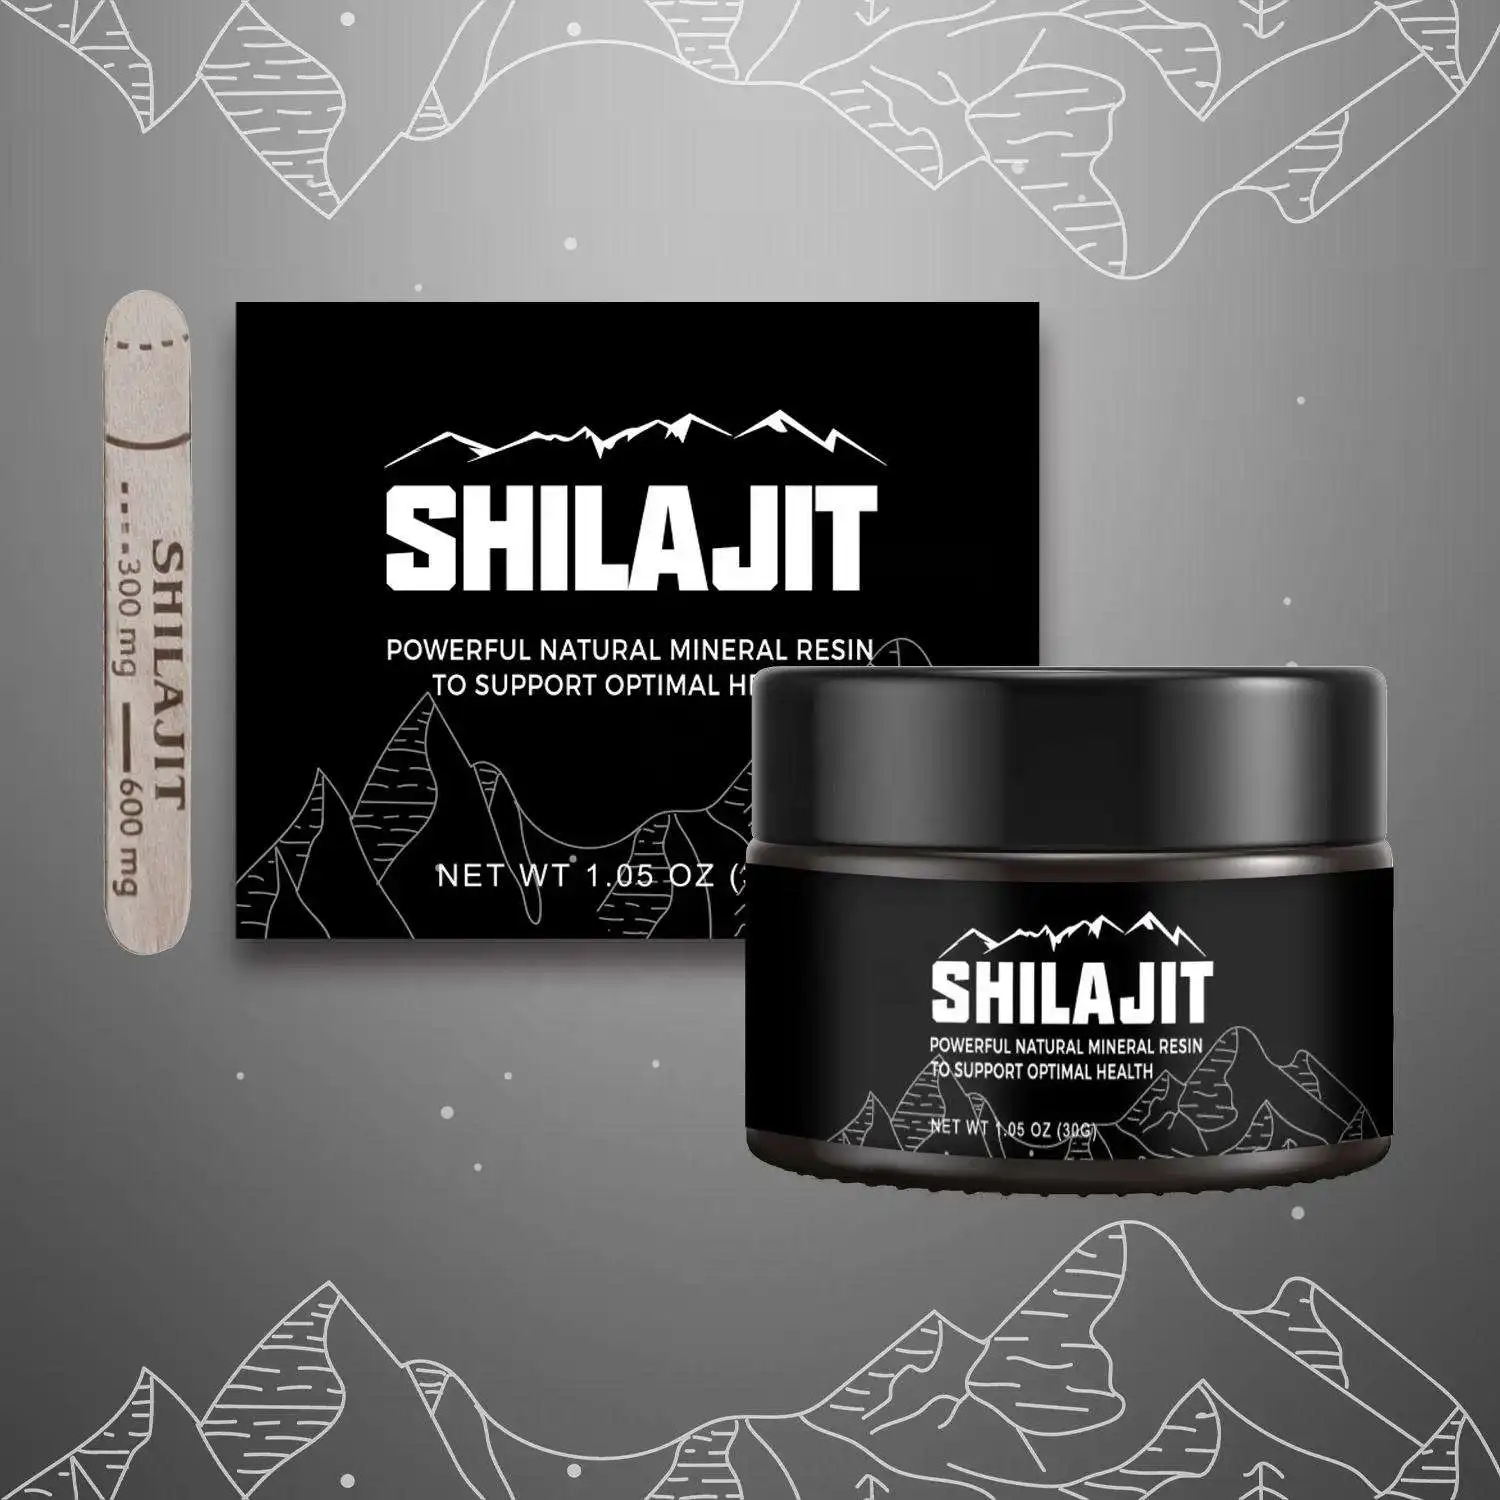 Vitamin mineralleri zengin Oem ambalaj diyet takviyesi orijinal Shilajit özü Shilajit ürünleri